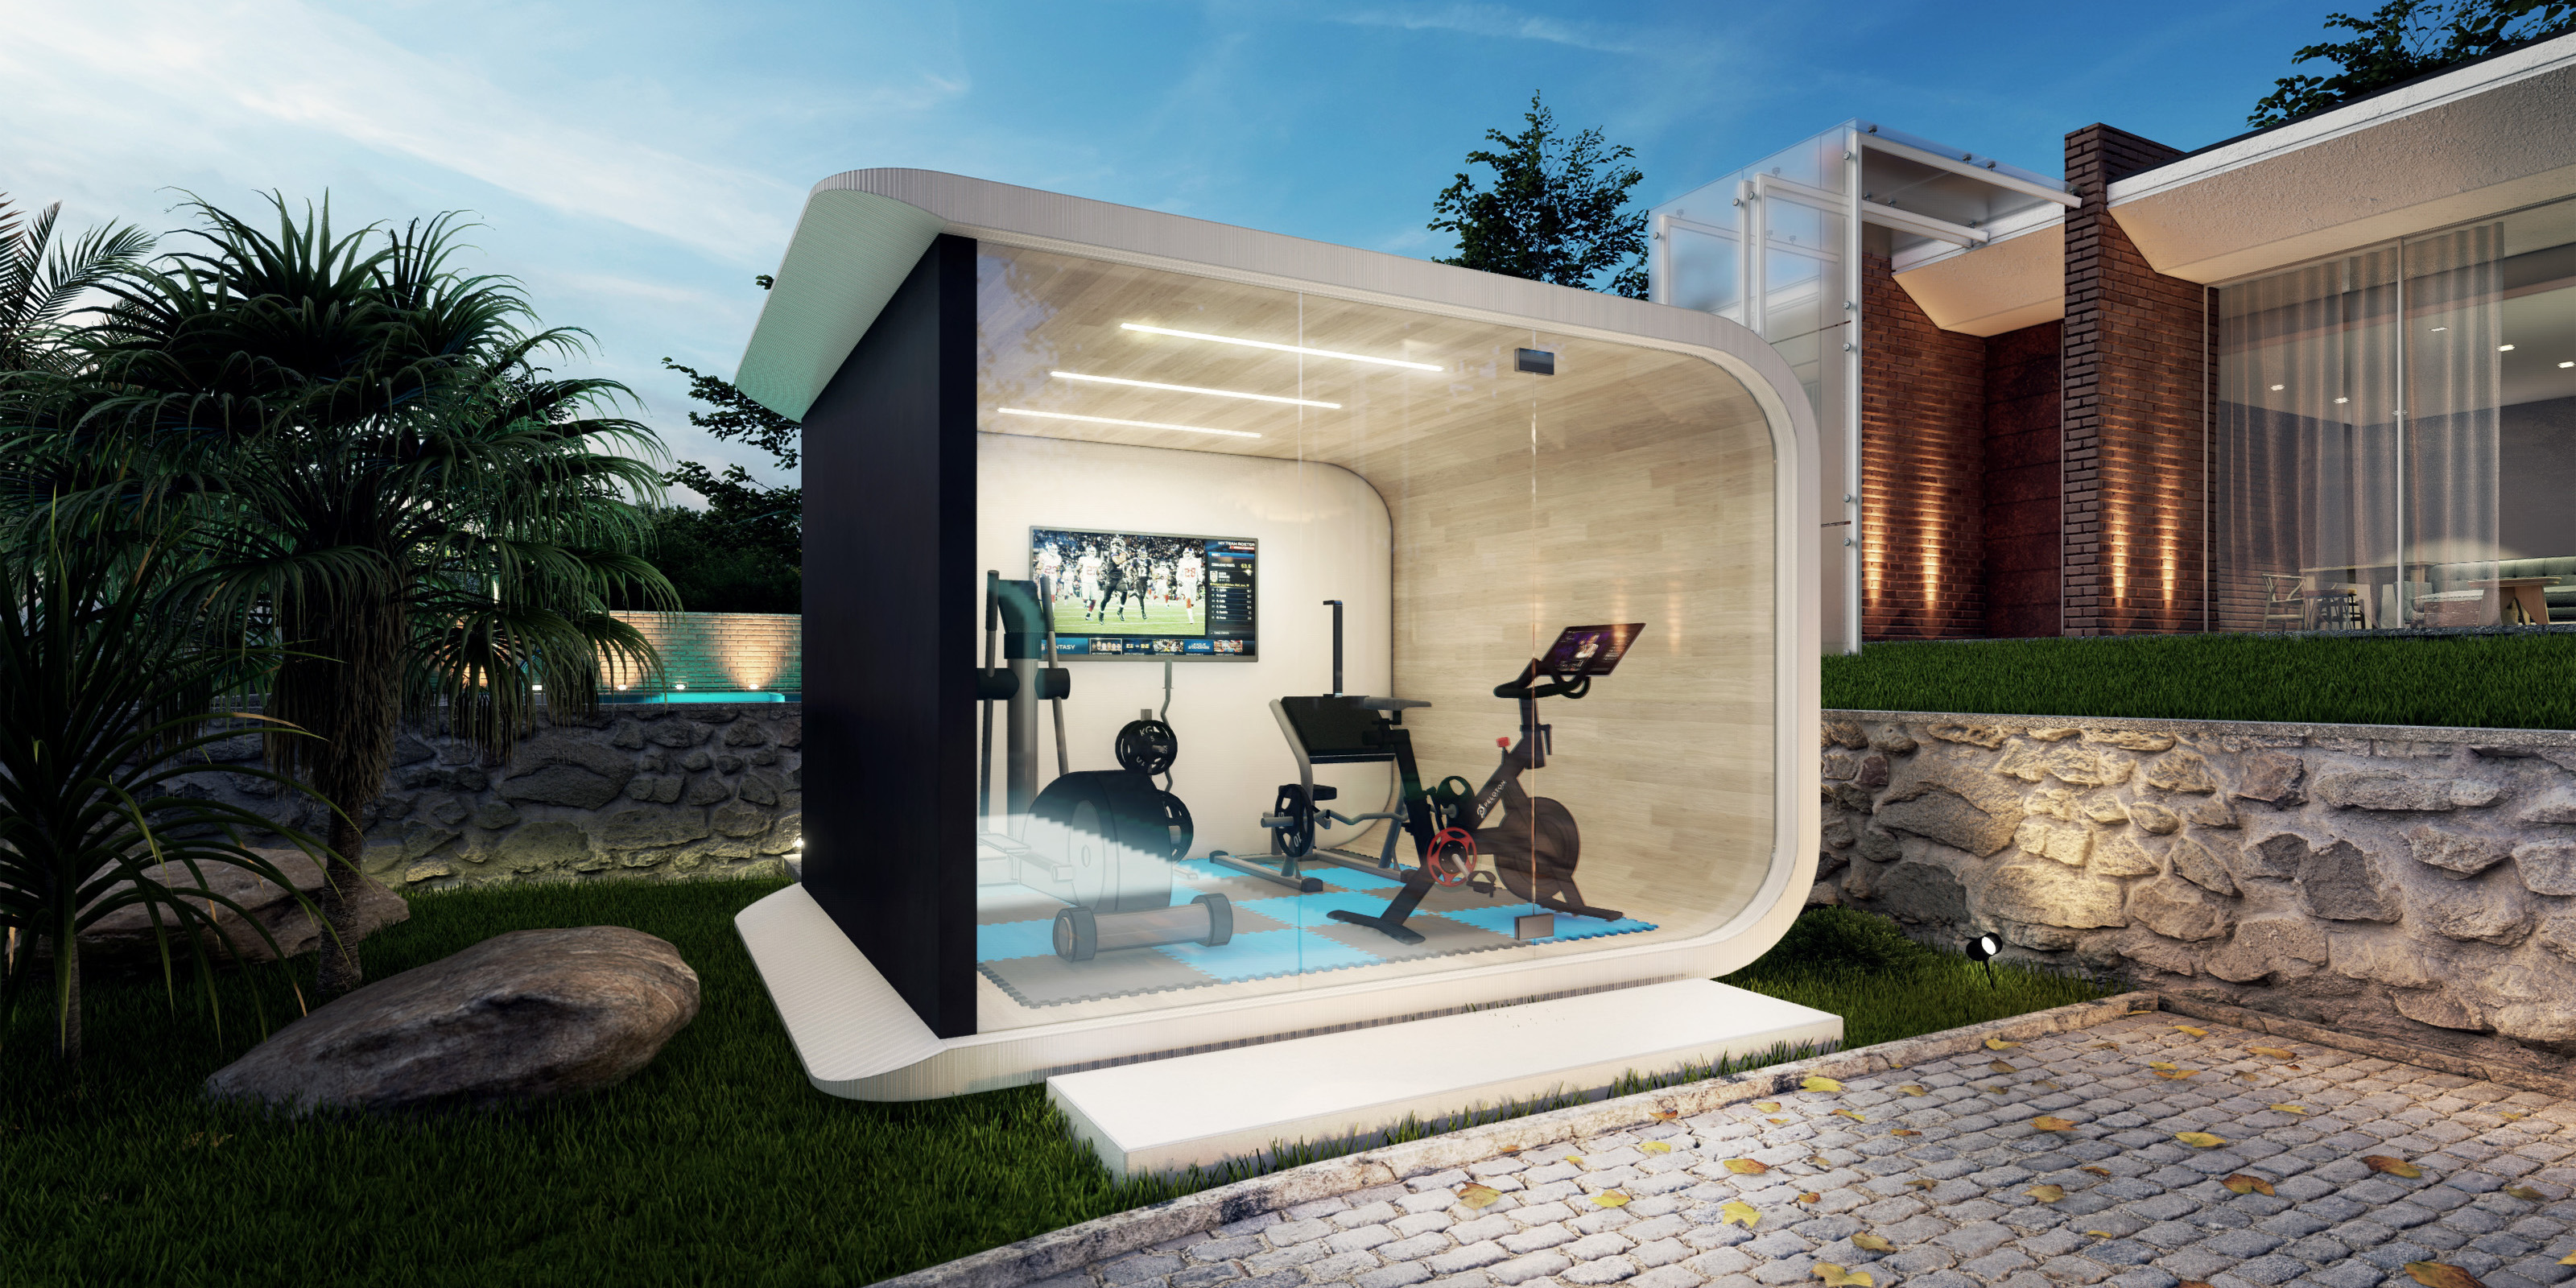 Azure backyard accessory dwelling unit modern